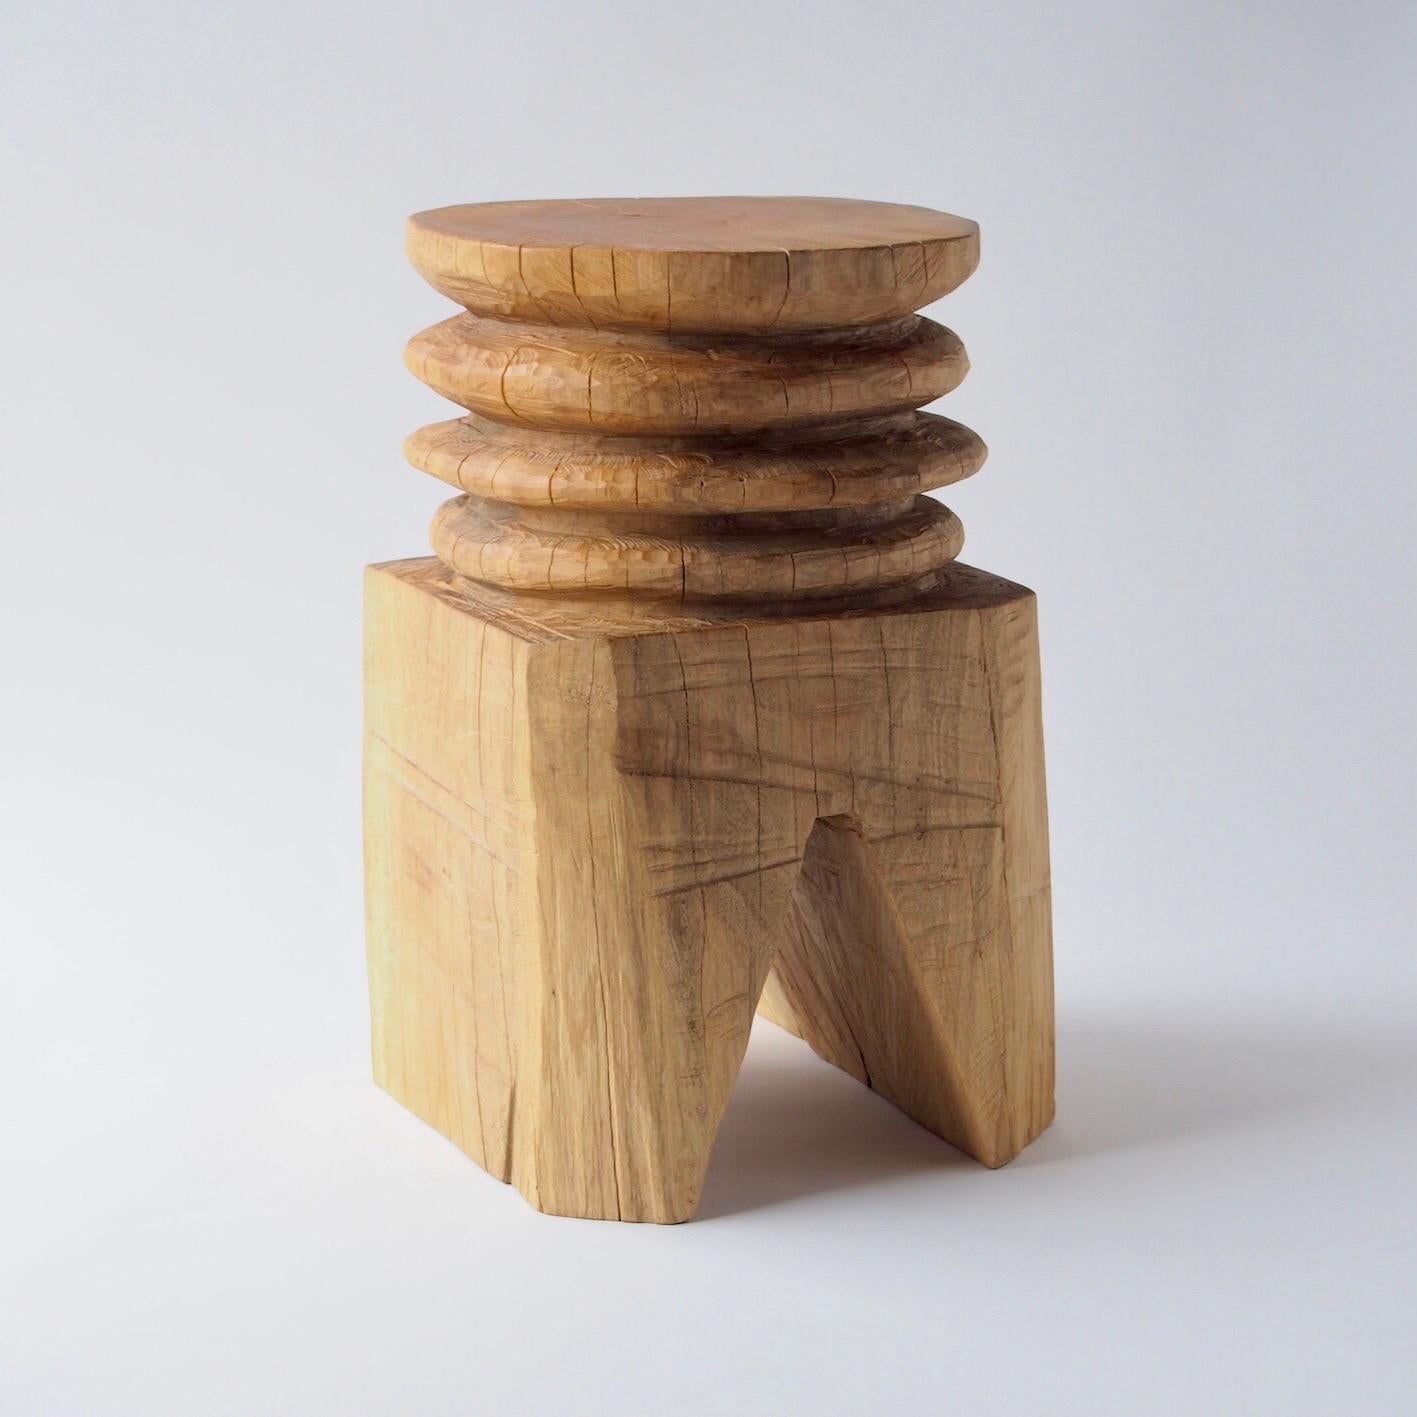 Nom : Pancake
Tabouret sculptural par les meubles sculptés Zogei
Matériau : Zelkova
Cette œuvre est taillée dans le bois avec des sortes de tronçonneuses.
La plupart des bois utilisés pour les œuvres de Nishimura ne peuvent servir à rien, ces